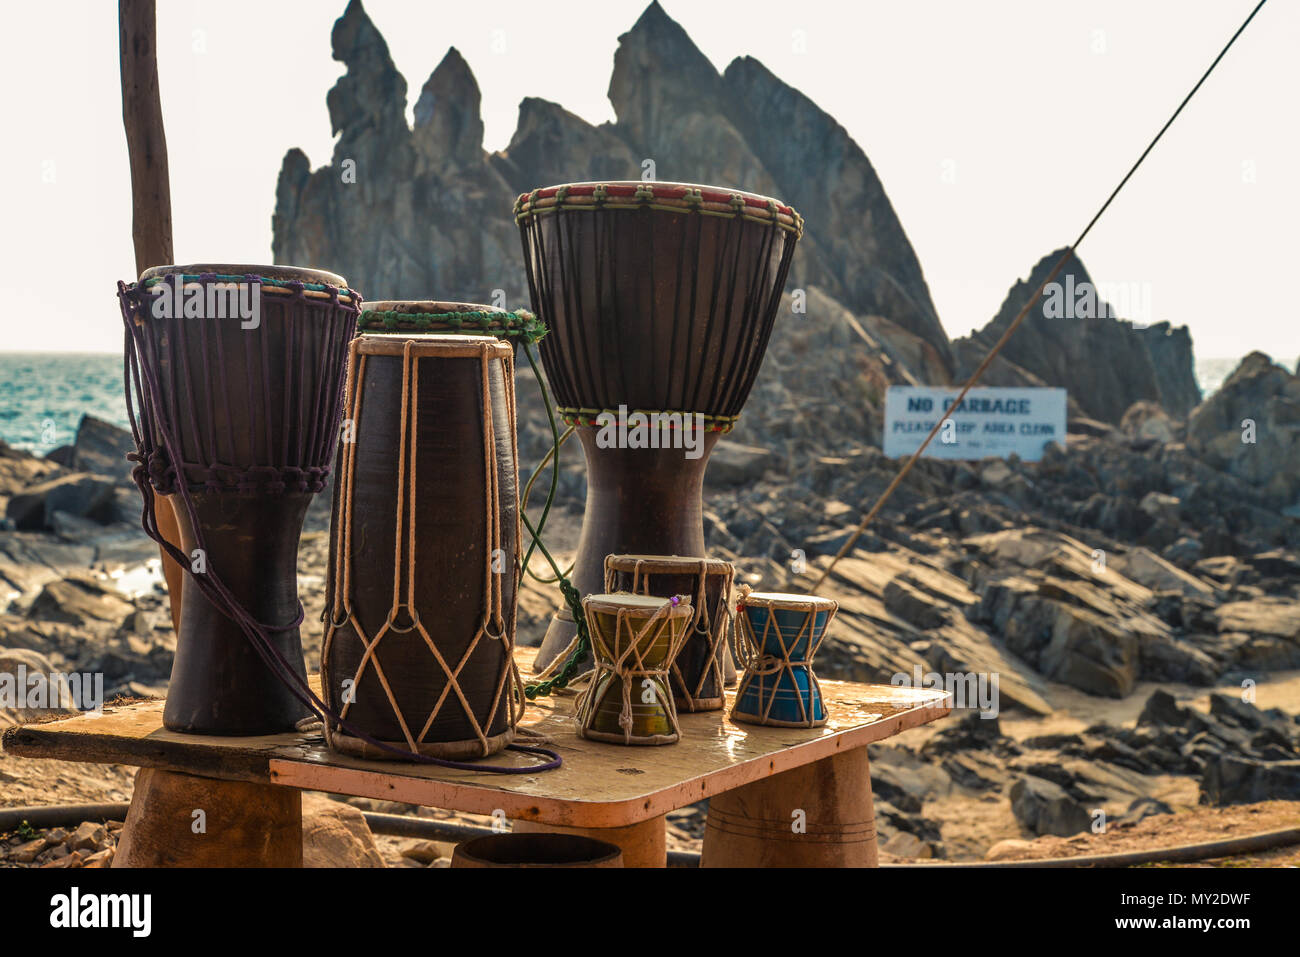 Verschiedenen bunten Musikinstrumente Drums in Asien Street Market in der Nähe des Ozeans, Indien, Goa Stockfoto